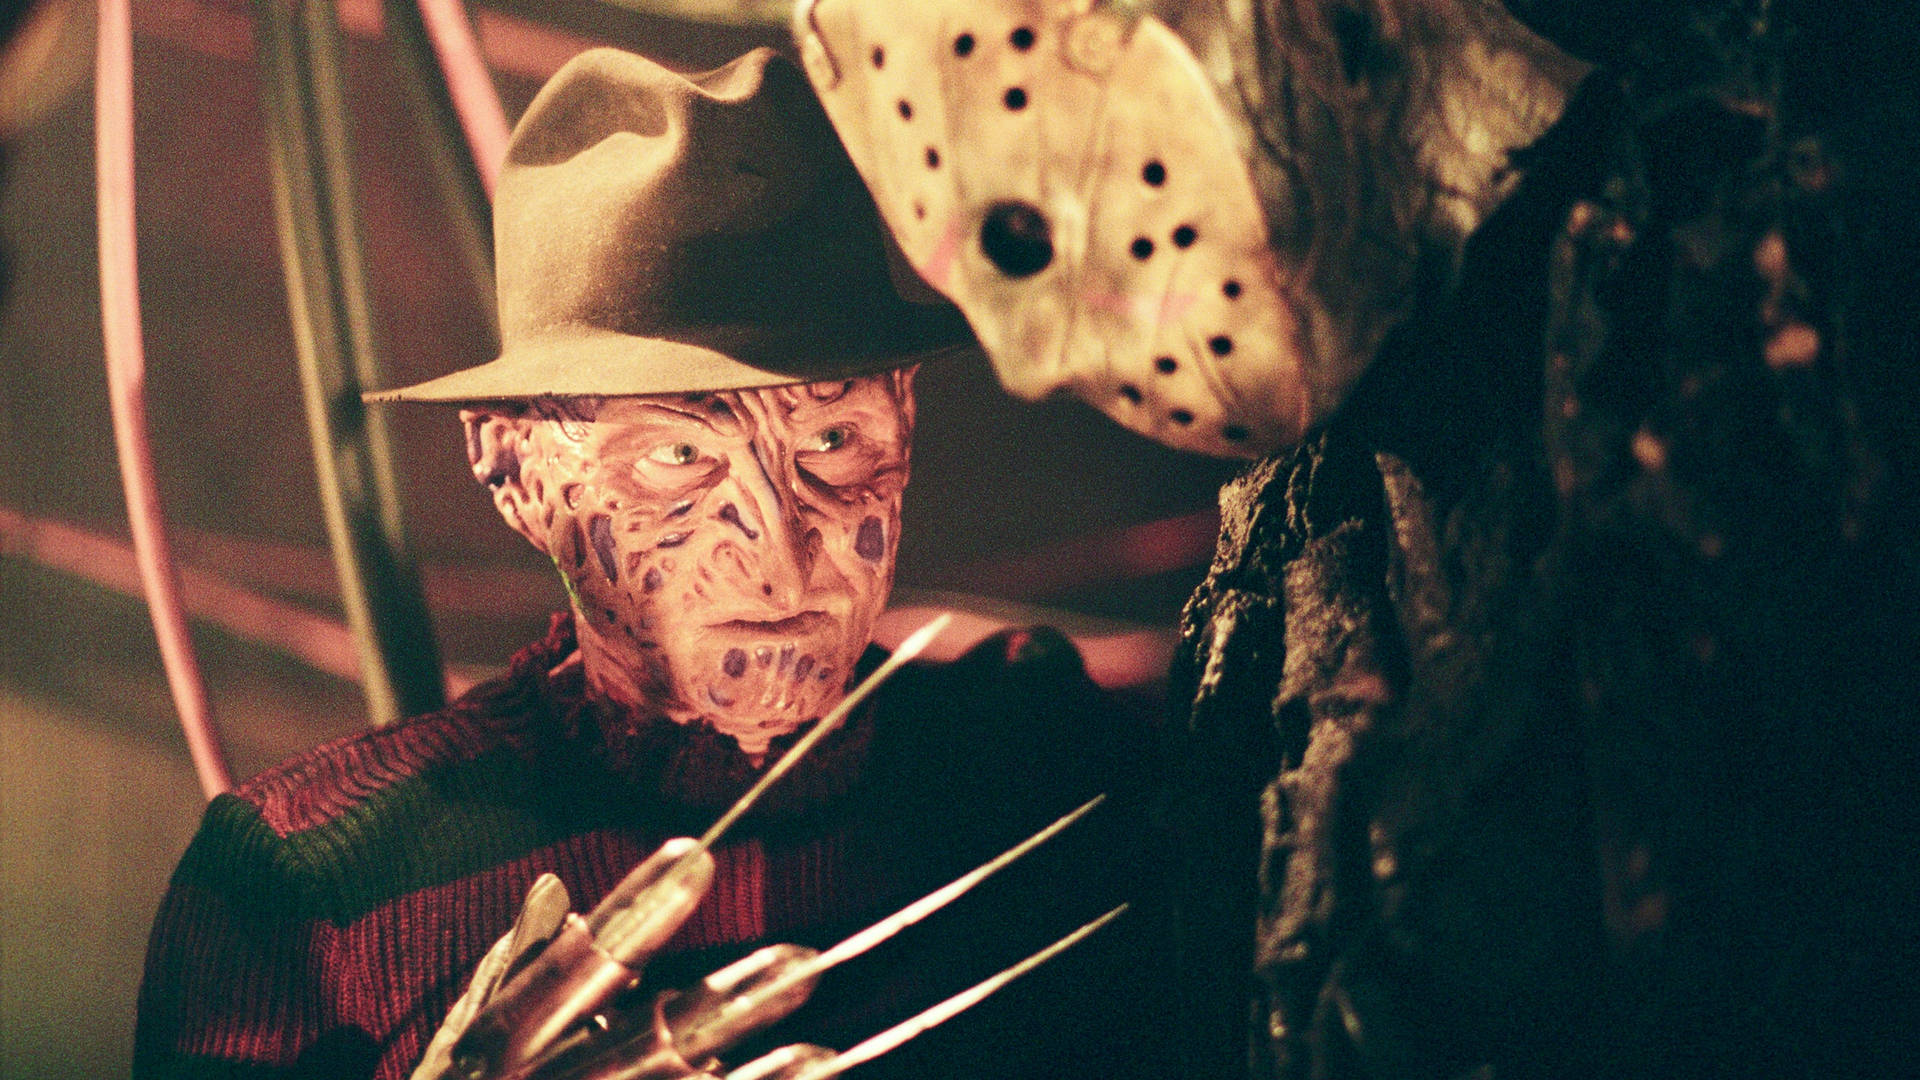 Freddy Krueger With Jason